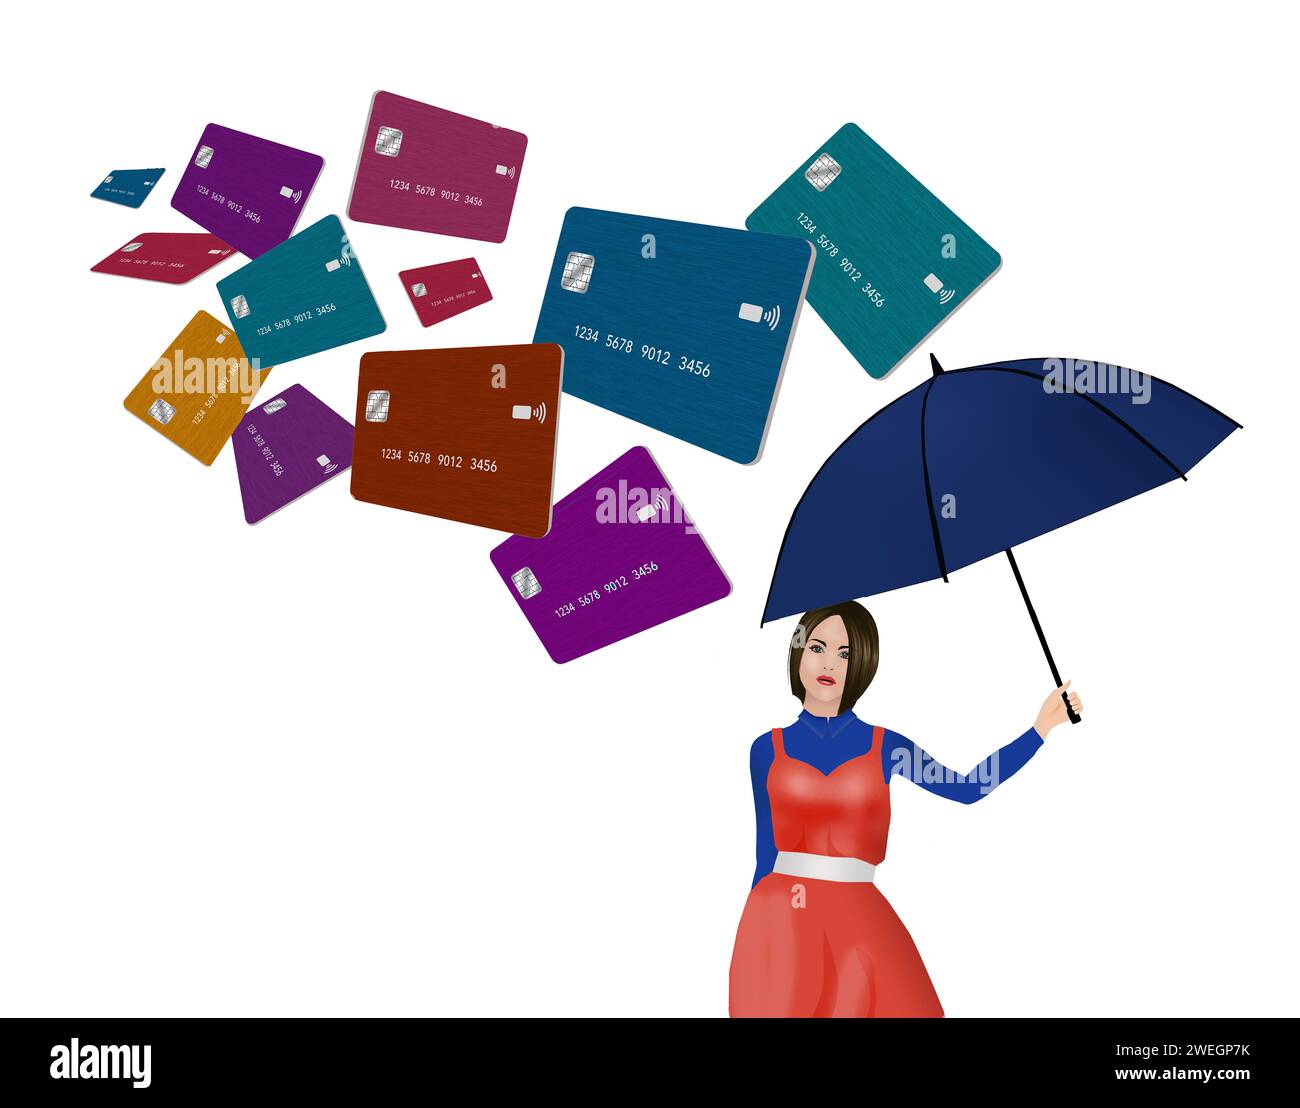 Eine junge Frau nutzt einen Regenschirm, um zahlreiche Kreditkartenangebote abzulenken, die sie in dieser 3D-Illustration per Post und online erhält. Stockfoto